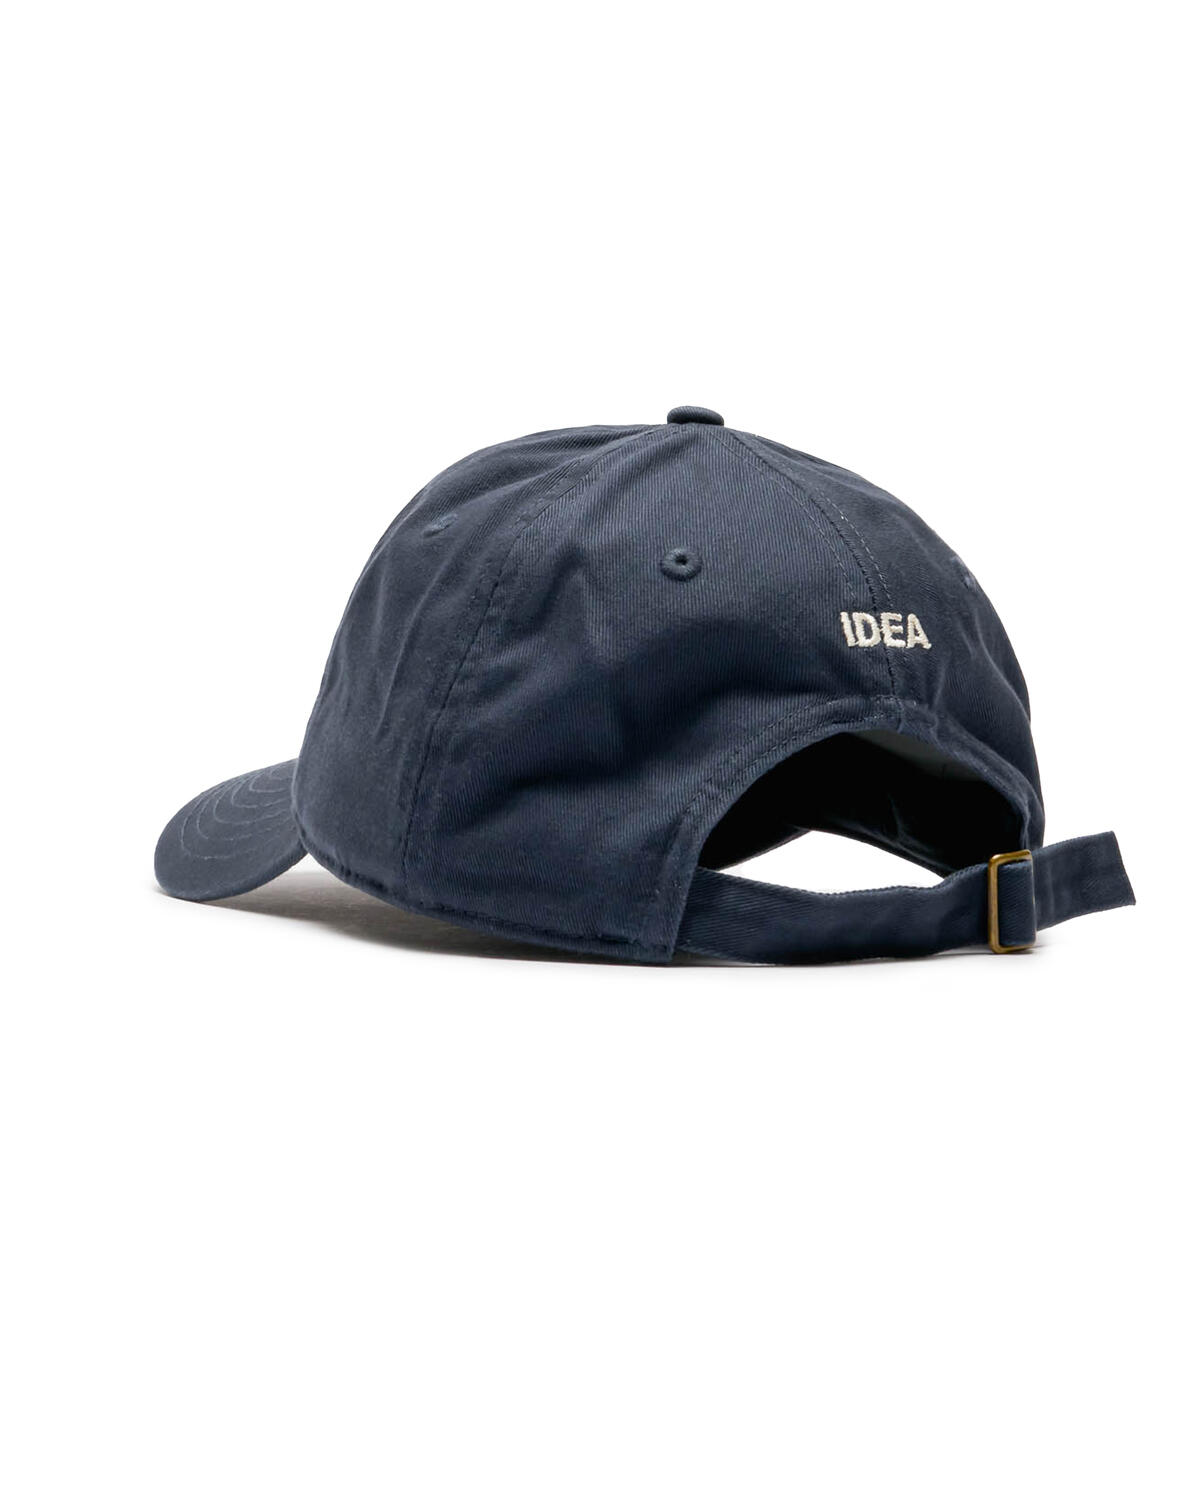 VEGAN ATHLETIC Hat (Navy)